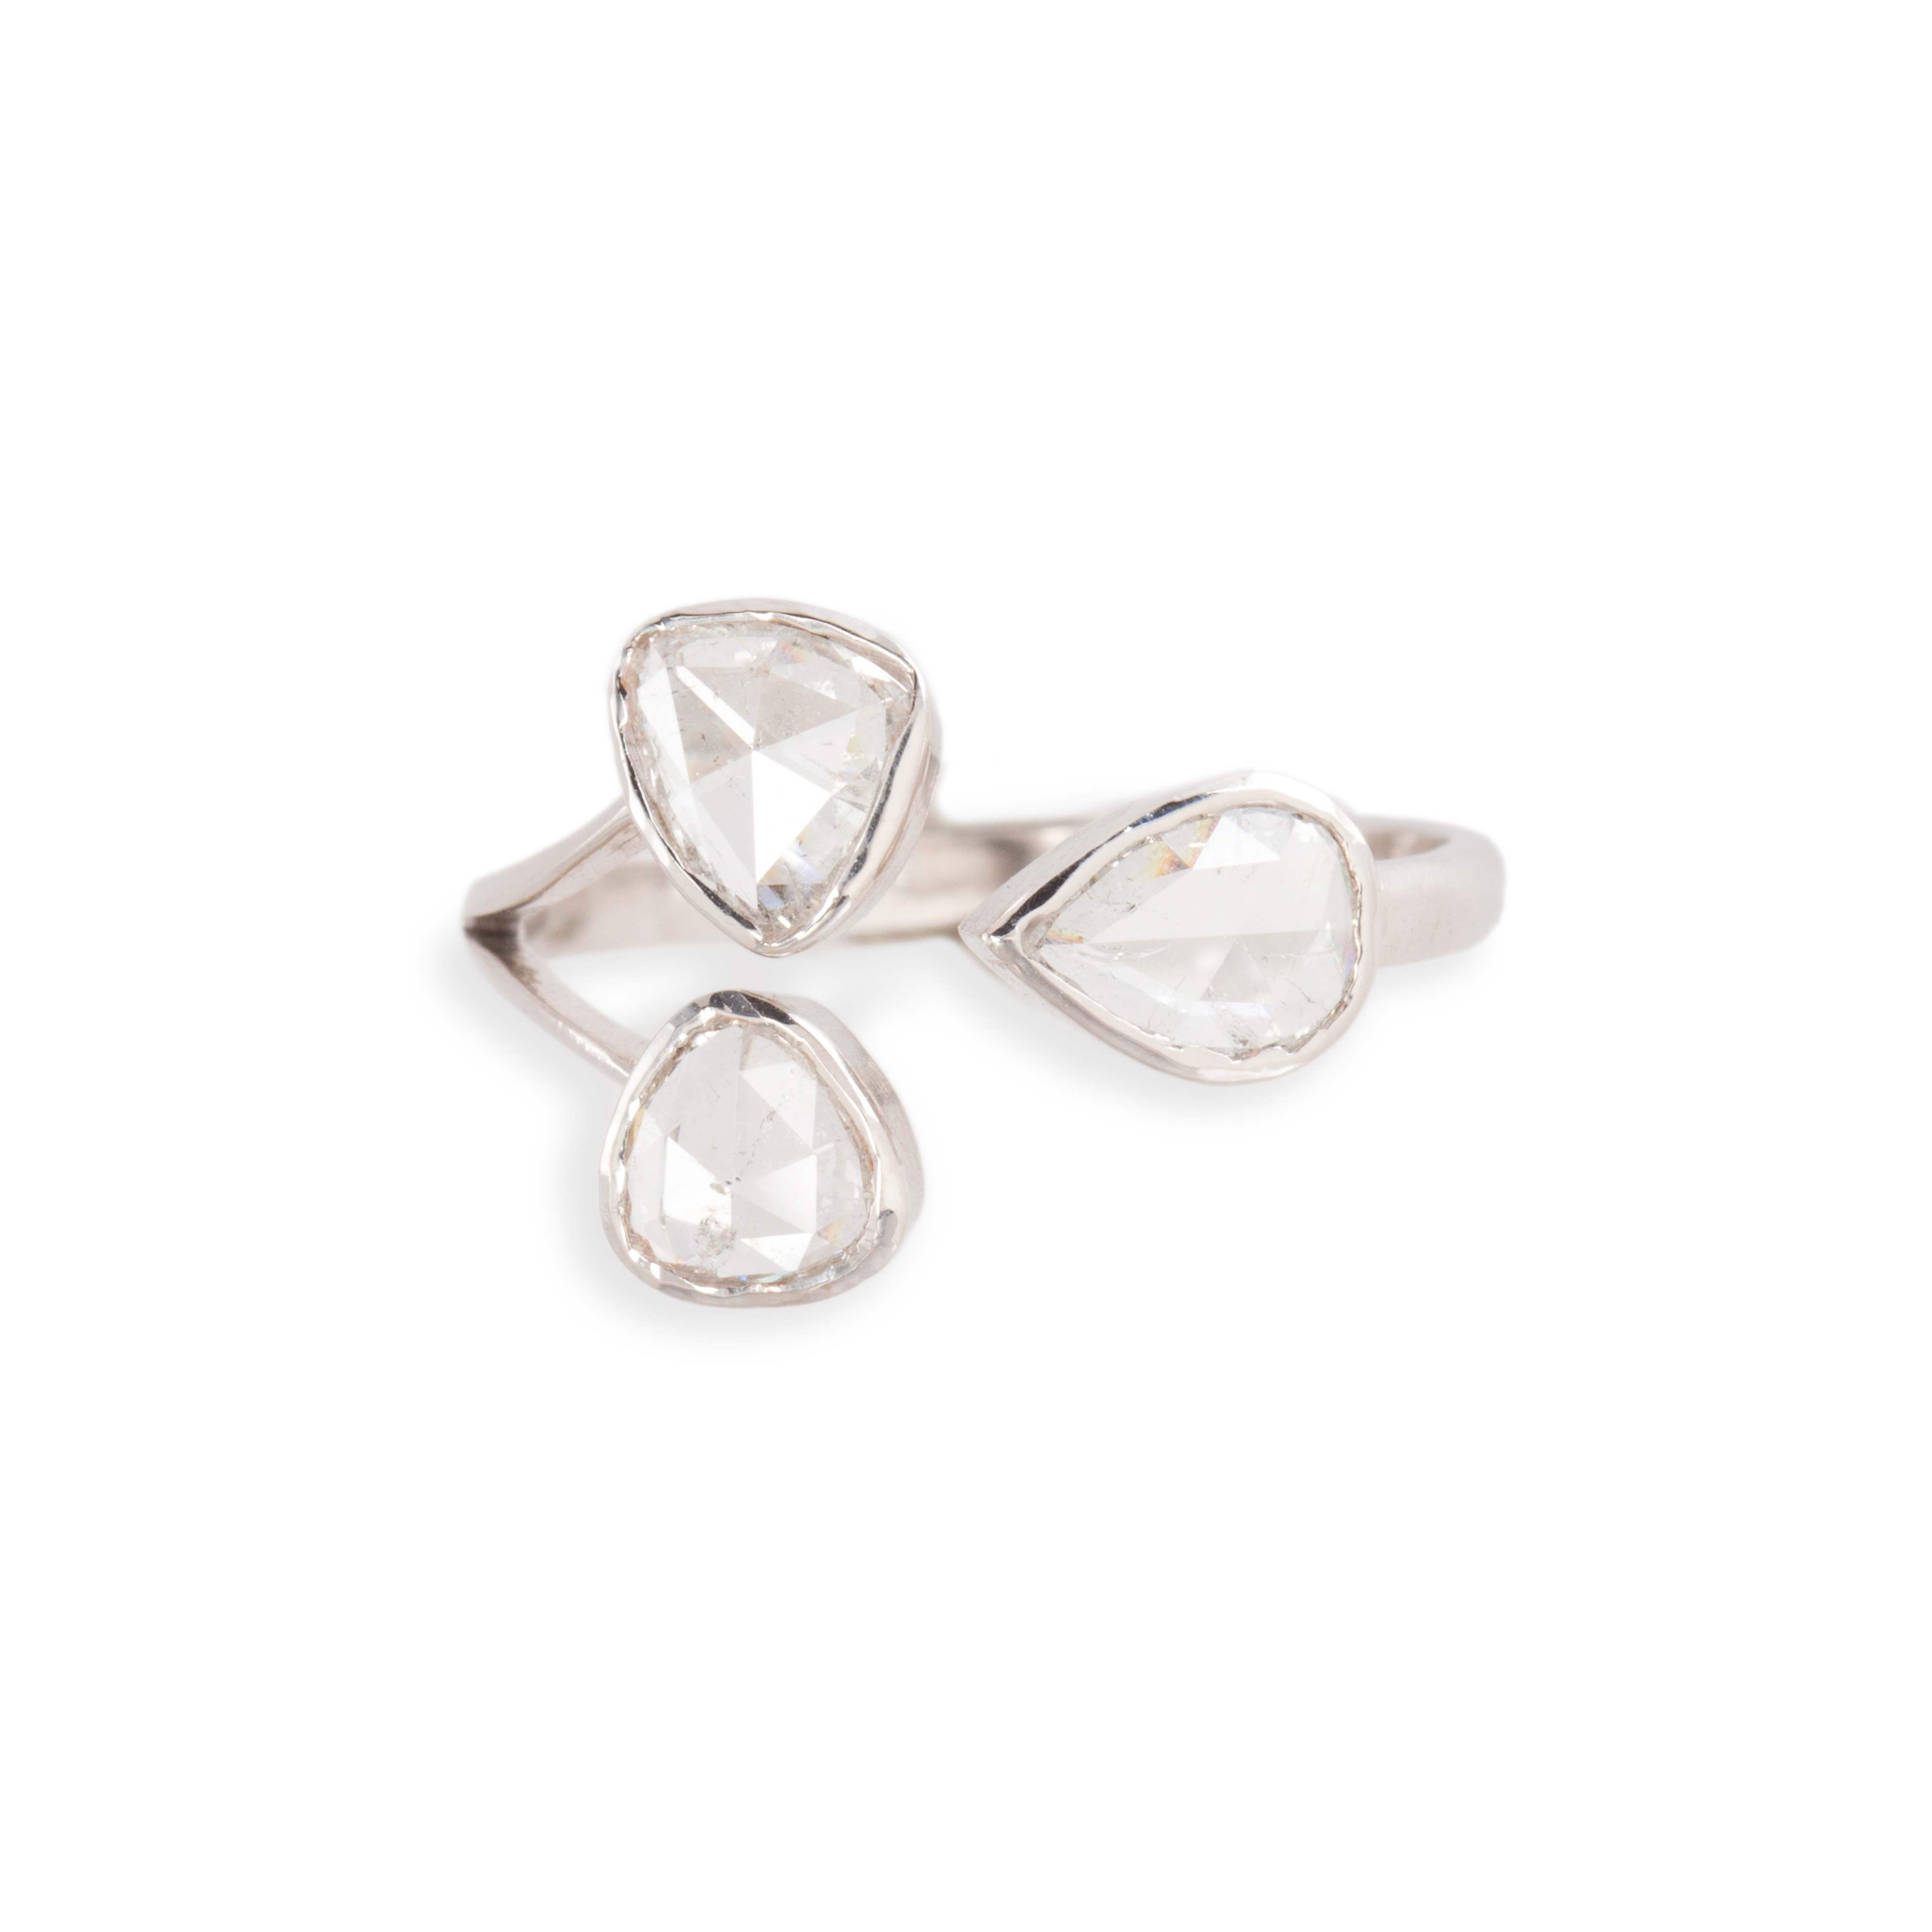 A DIAMOND AND EIGHTEEN KARAT WHITE 3a6a43